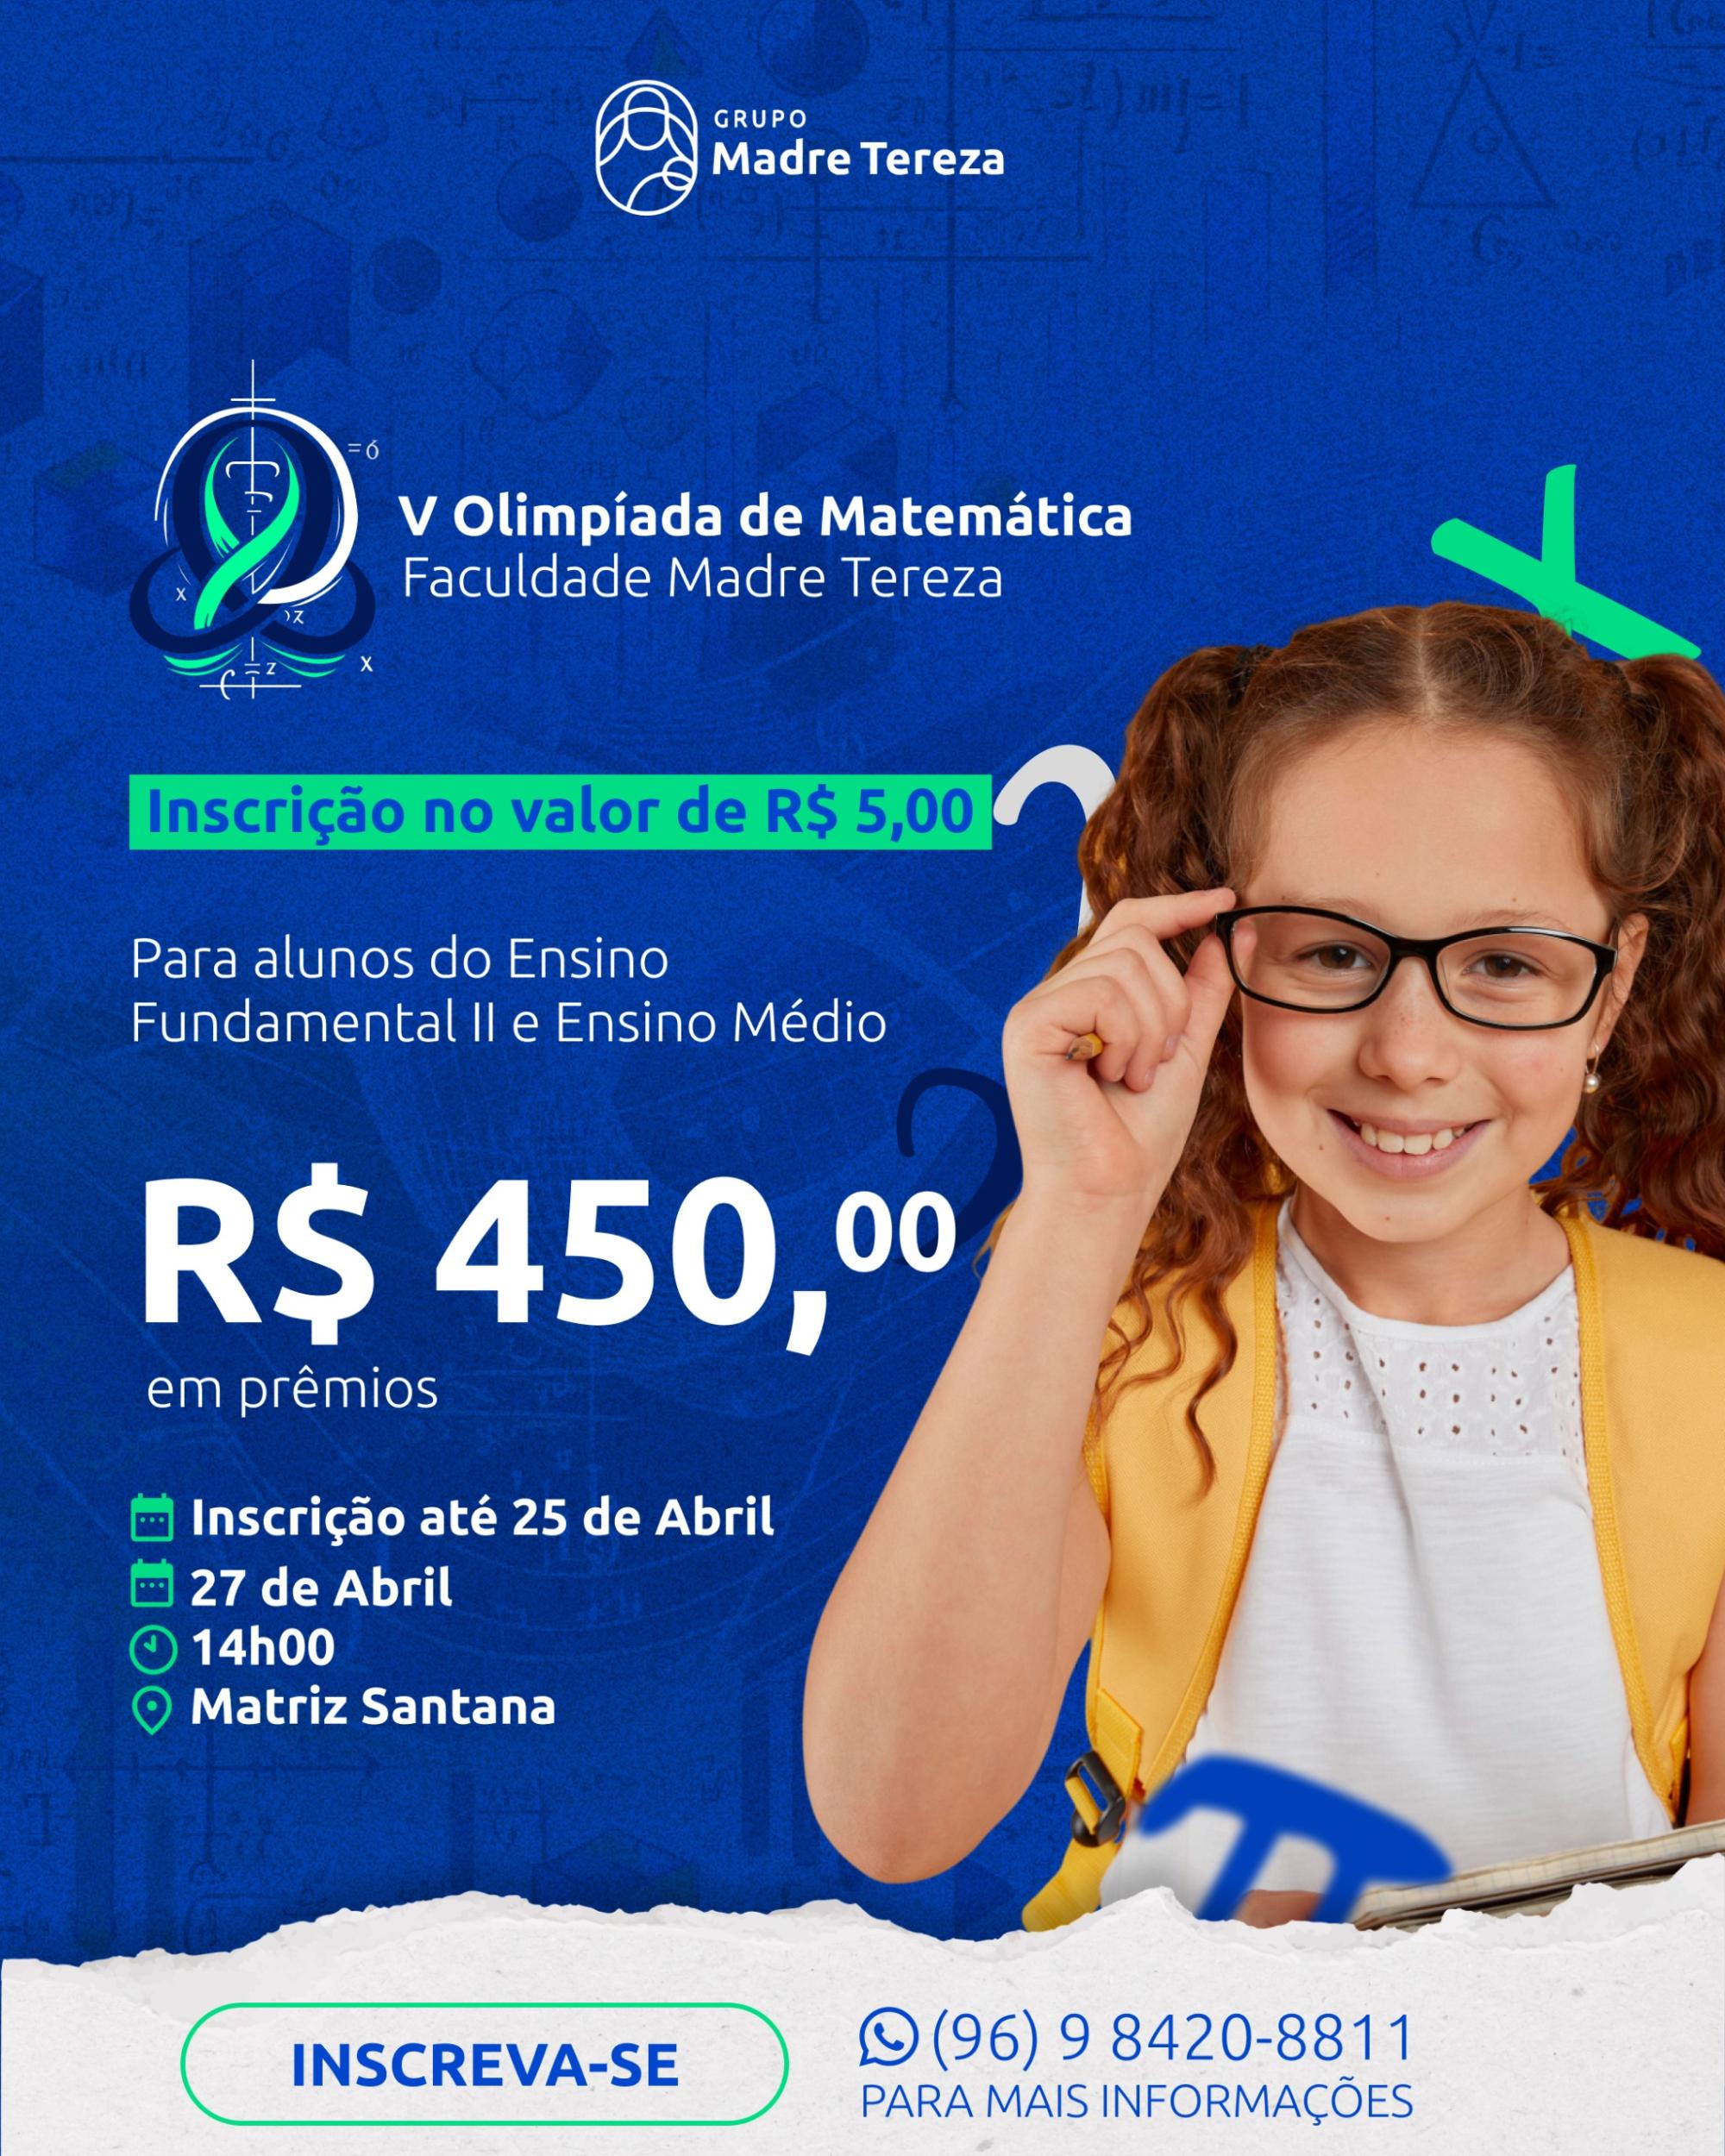 Faculdade Madre Tereza promove a 5ª Olimpíada de Matemática para incentivar o raciocínio lógico e a inclusão social